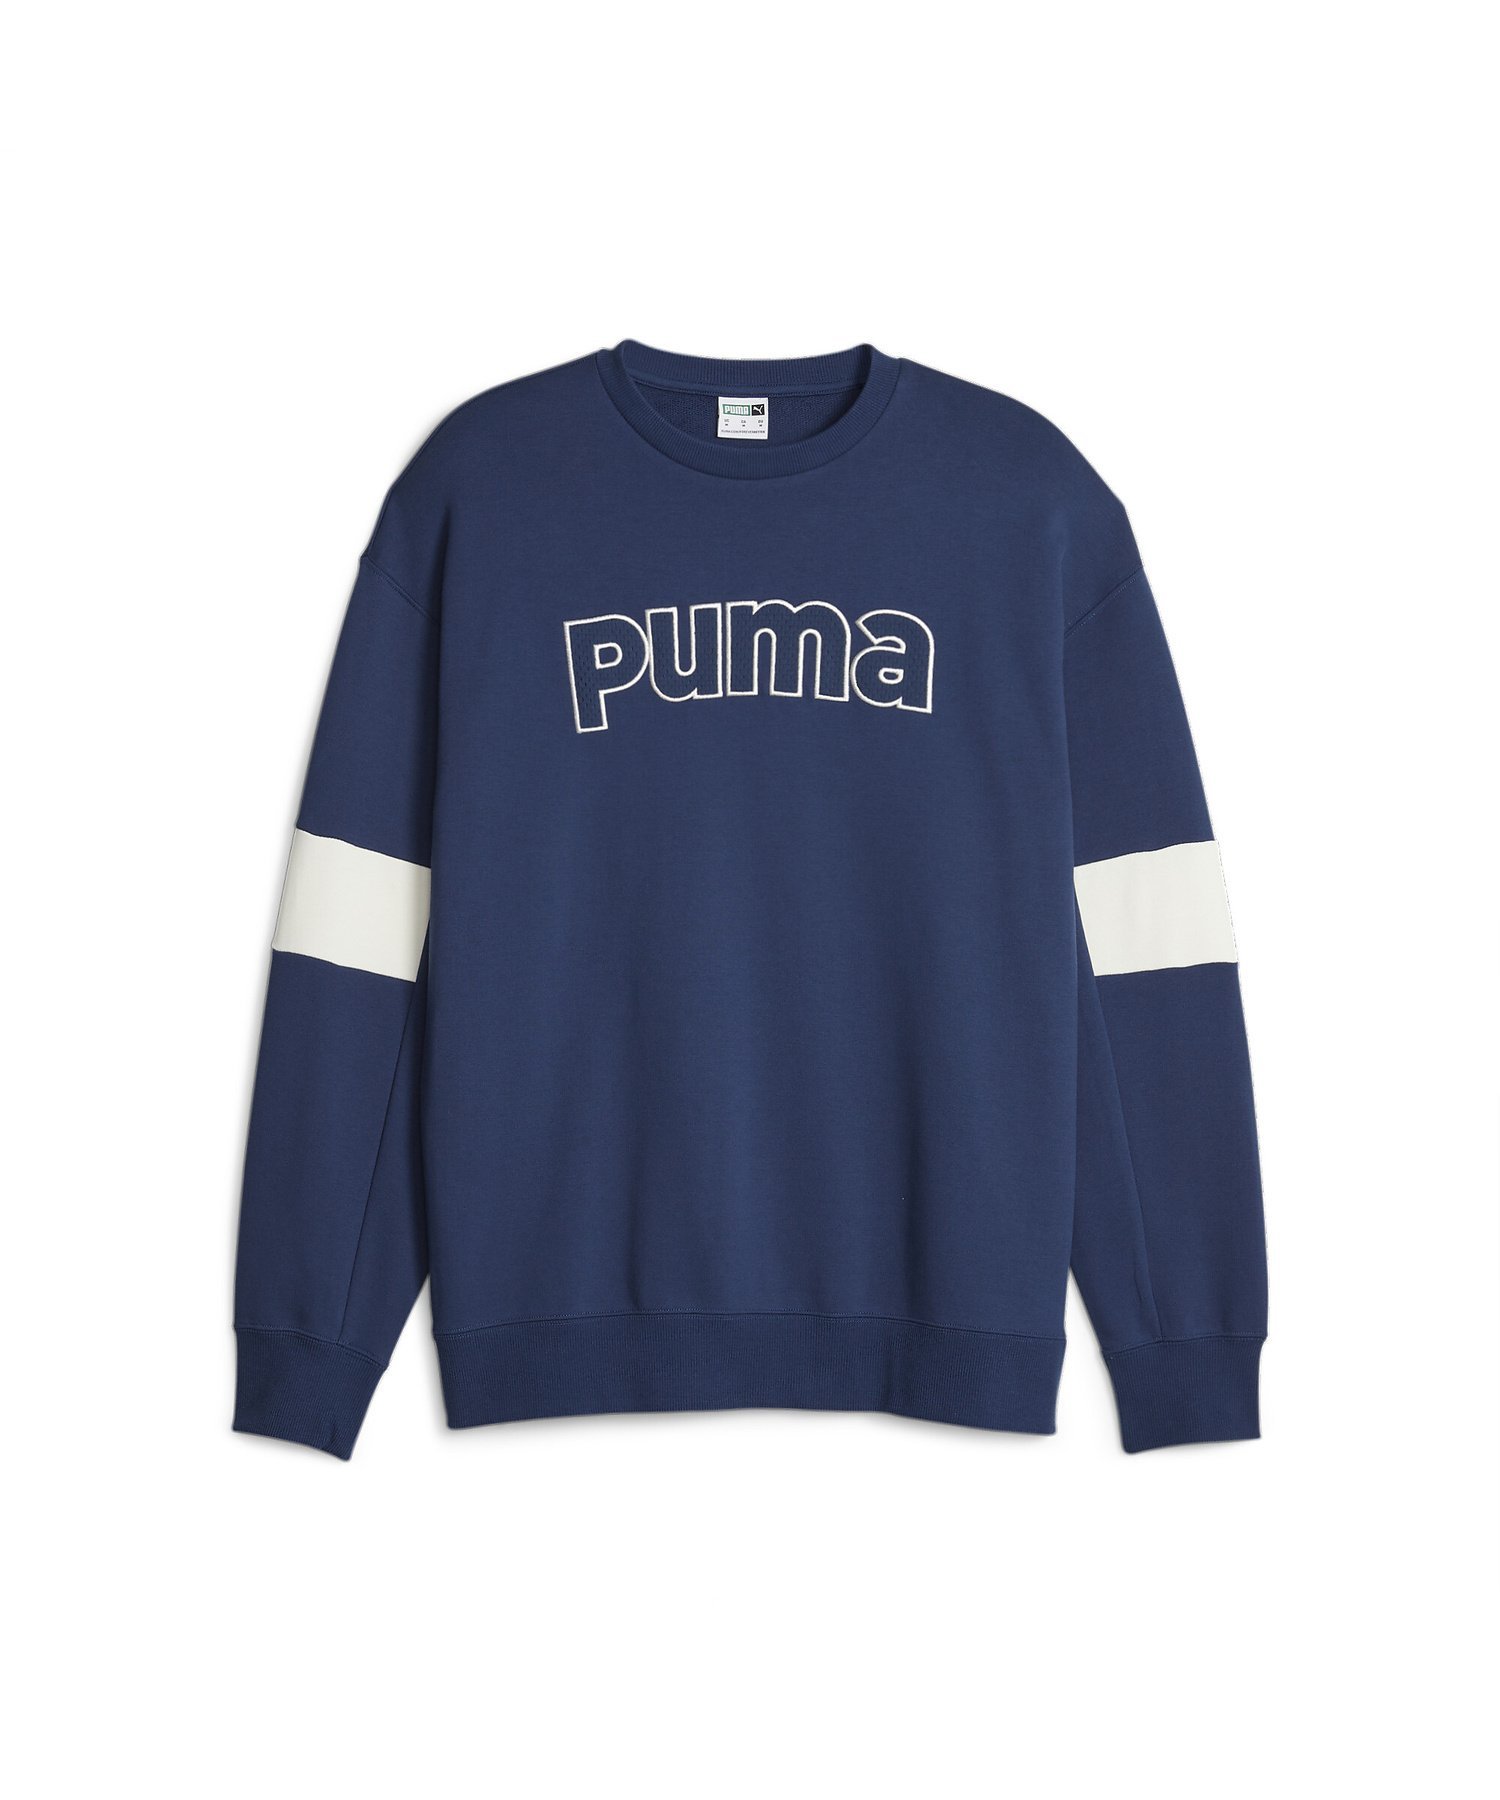 プーマ トレーナー メンズ 【SALE／30%OFF】PUMA メンズ PUMA TEAM クルー スウェット プーマ トップス スウェット・トレーナー【送料無料】